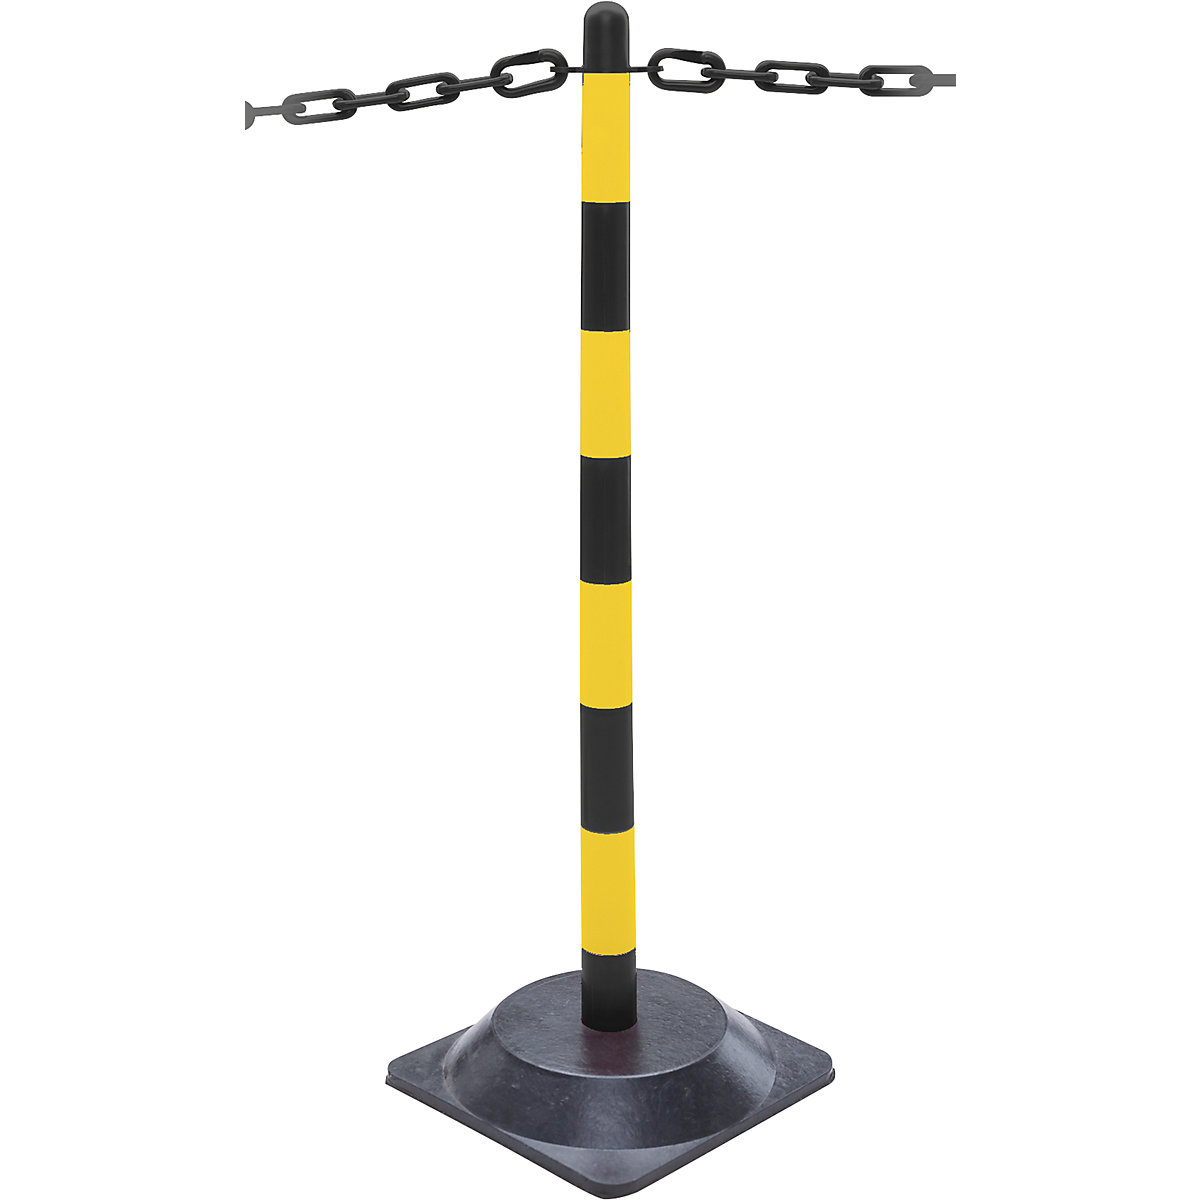 Komplet stalaka s lancem, četvrtasto podnožje od čvrste gume, 6 stupova, lanac dužine 10 m, u crnoj / žutoj boji-6